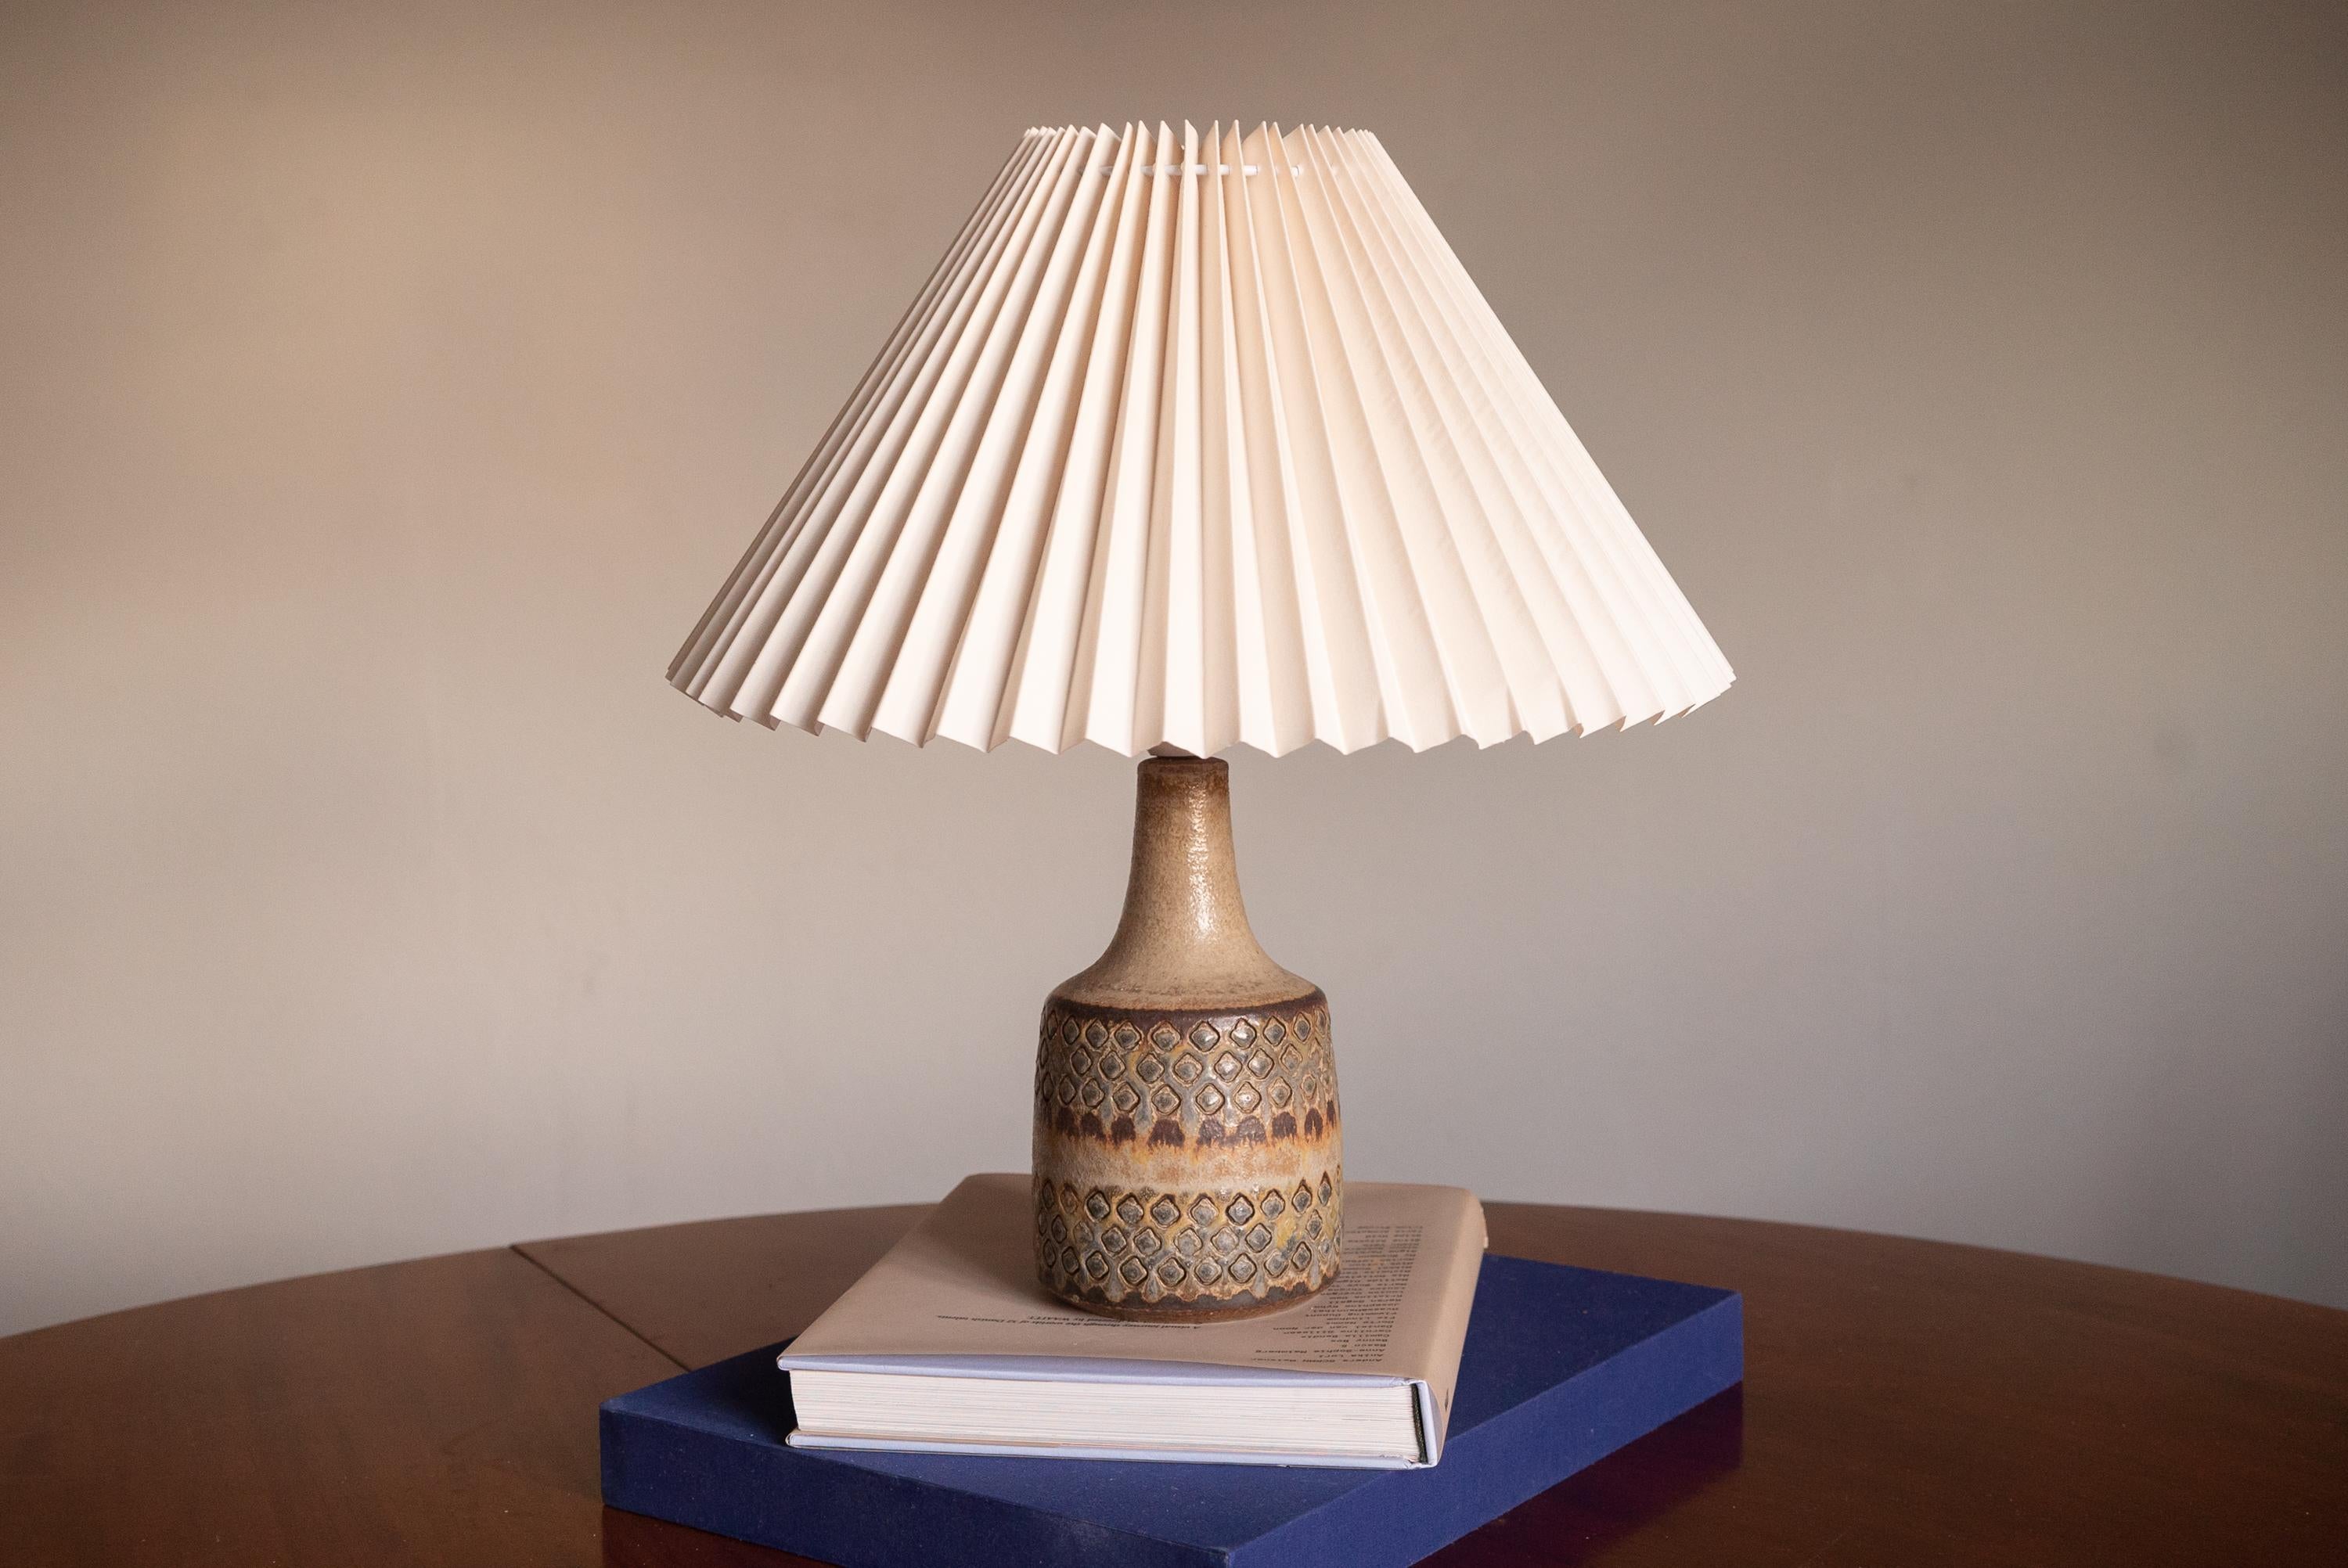 Lampe de table produite par Søholm Keramik, situé sur l'île de Bornholm au Danemark. Elle présente un décor glacé et incisé très artistique.

Vendu sans abat-jour. Les dimensions indiquées ne comprennent pas l'abat-jour. La hauteur inclut la douille.